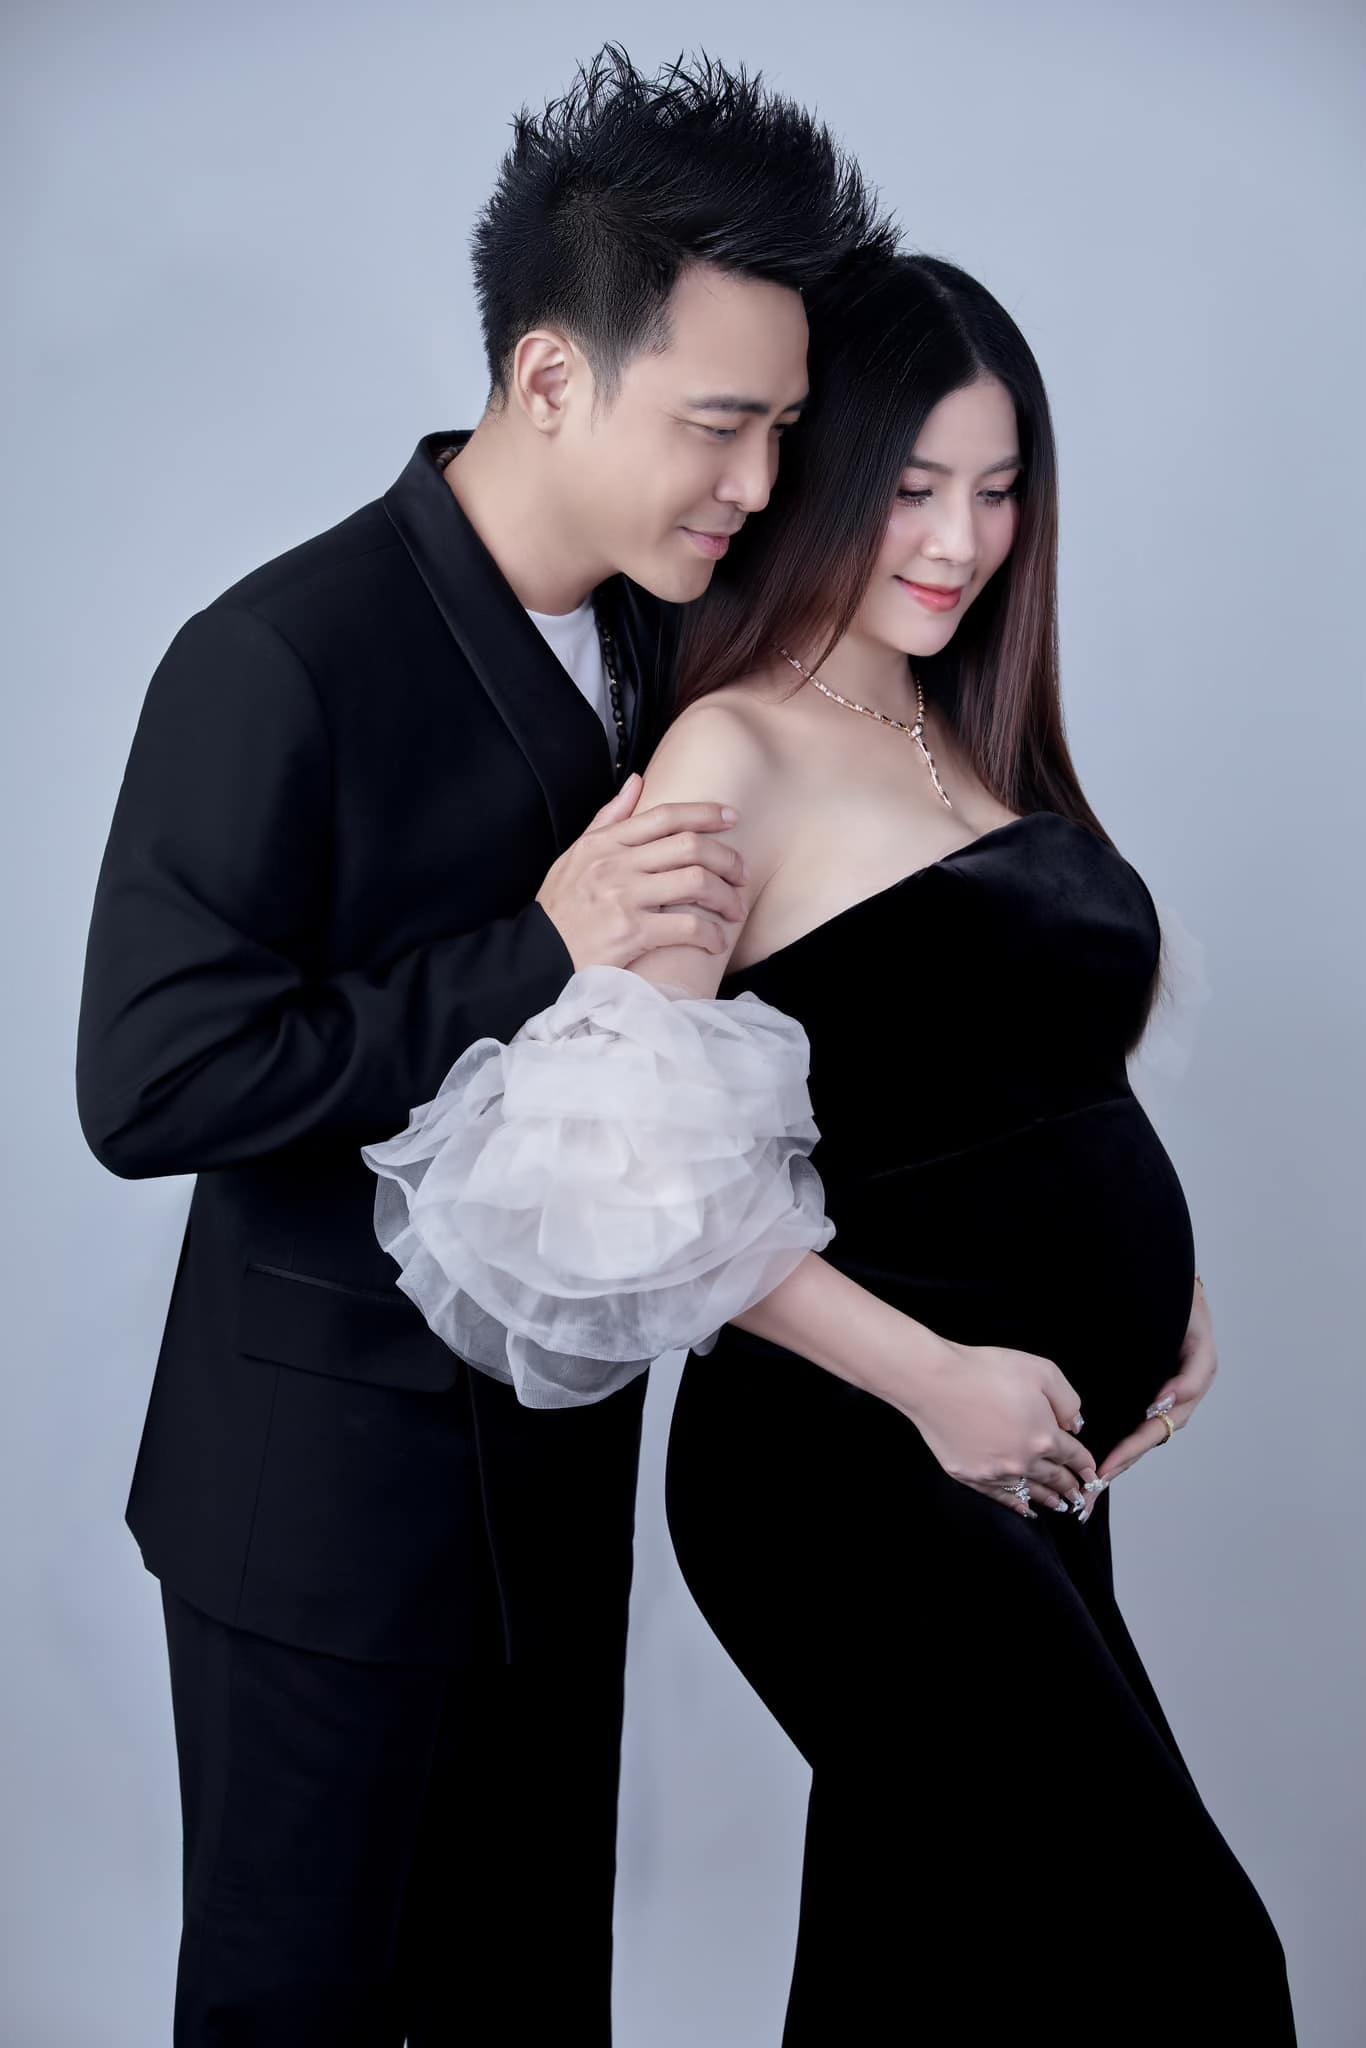 Diễn viên Kha Ly “vỡ òa” báo tin đang mang thai 7 tháng sau 8 năm kết hôn, nhan sắc mới gây chú ý - ảnh 2